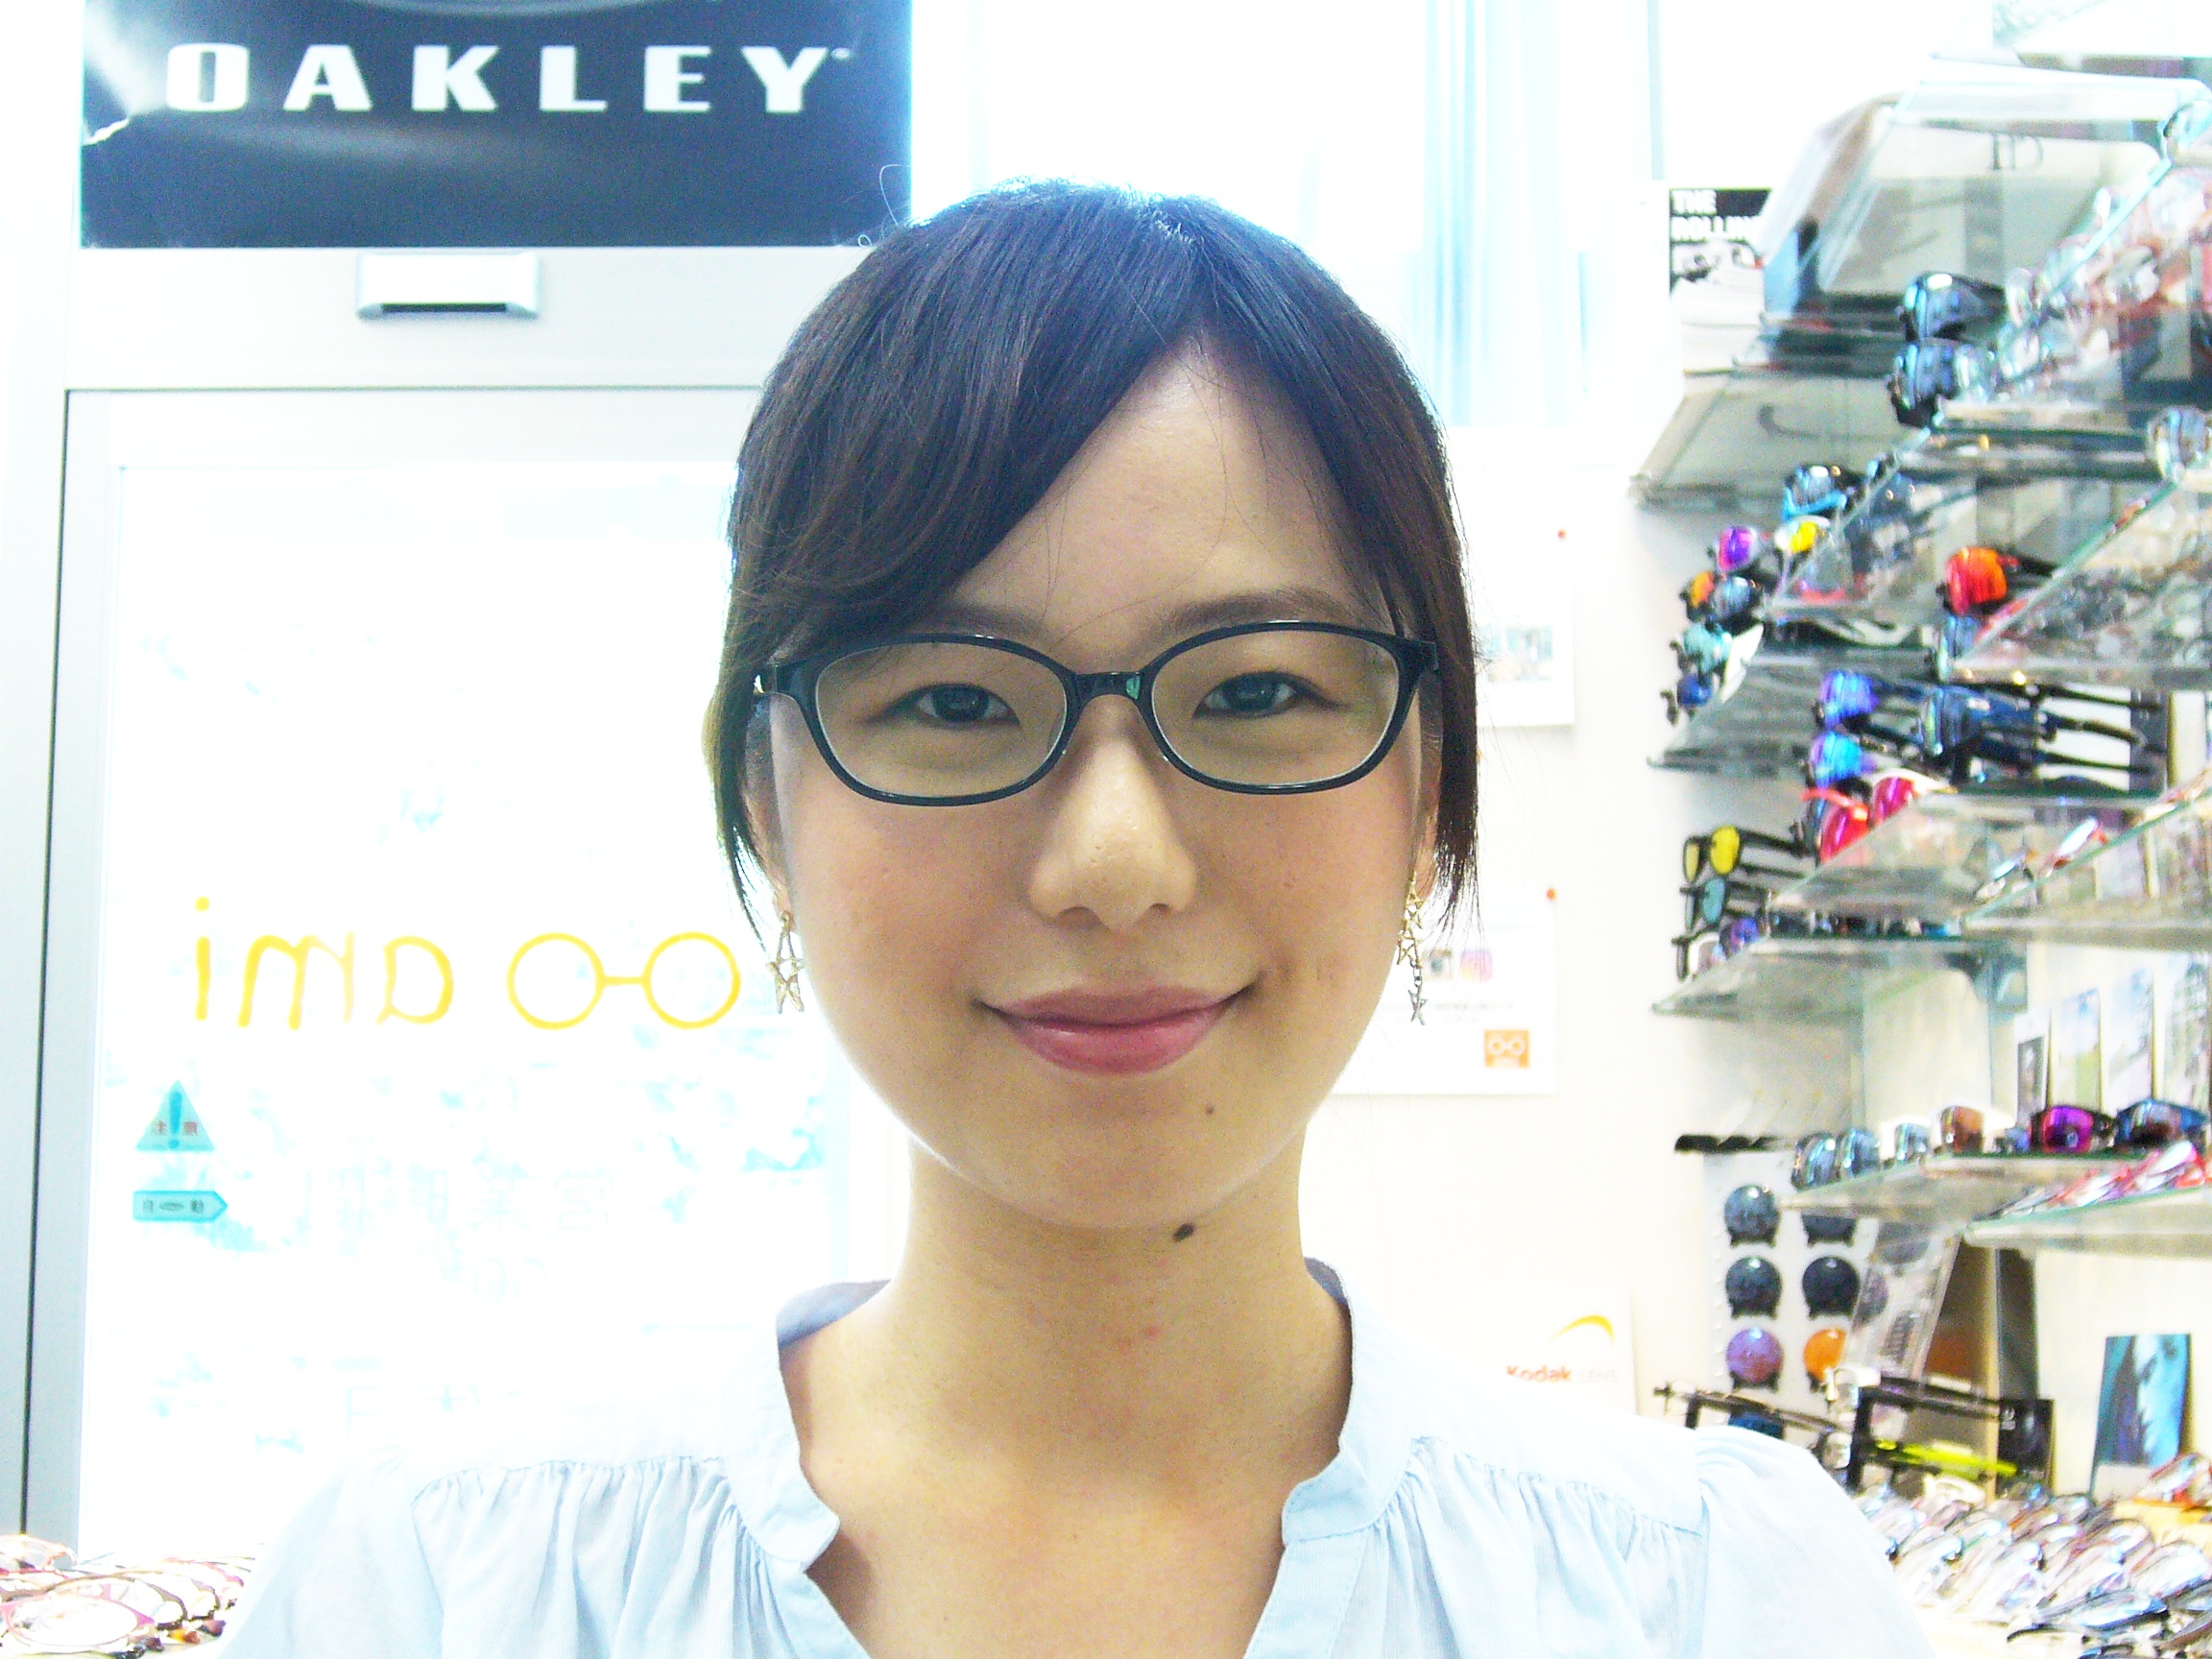 ami専属モデルさん - 岐阜県関市のメガネ専門店 Eyewear shop ami